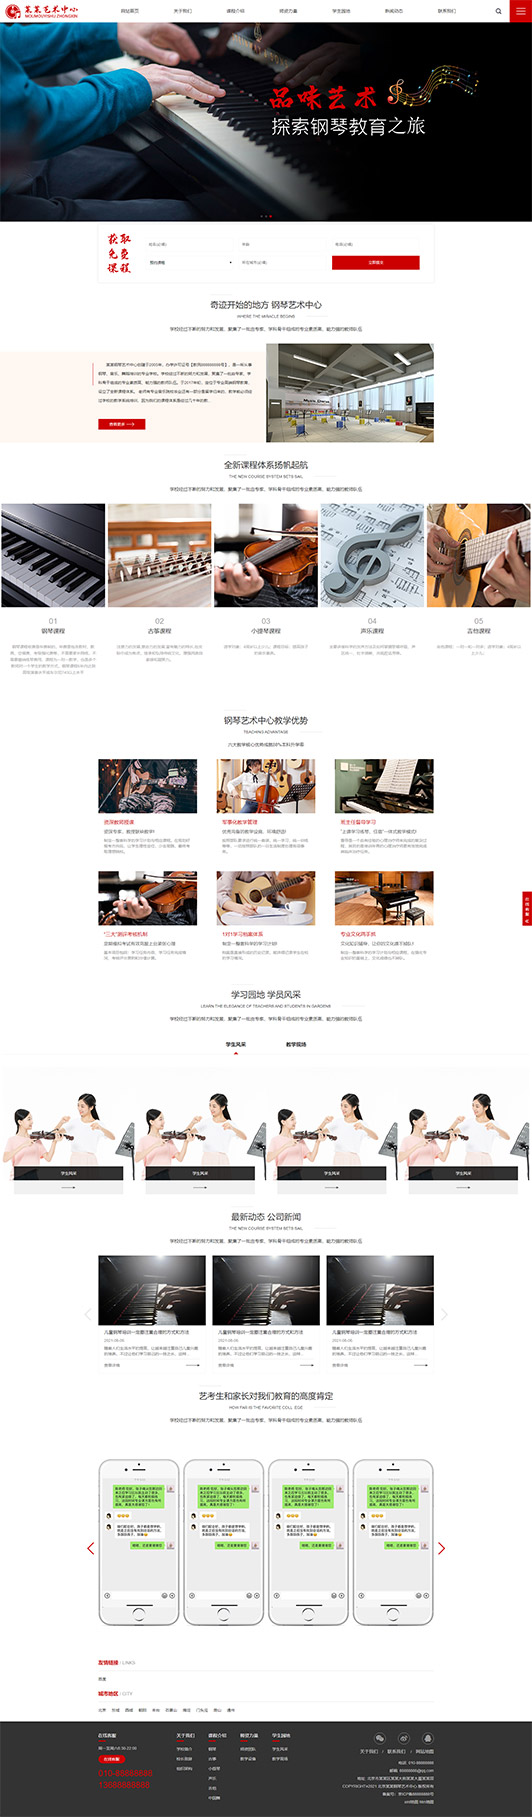 庆阳钢琴艺术培训公司响应式企业网站